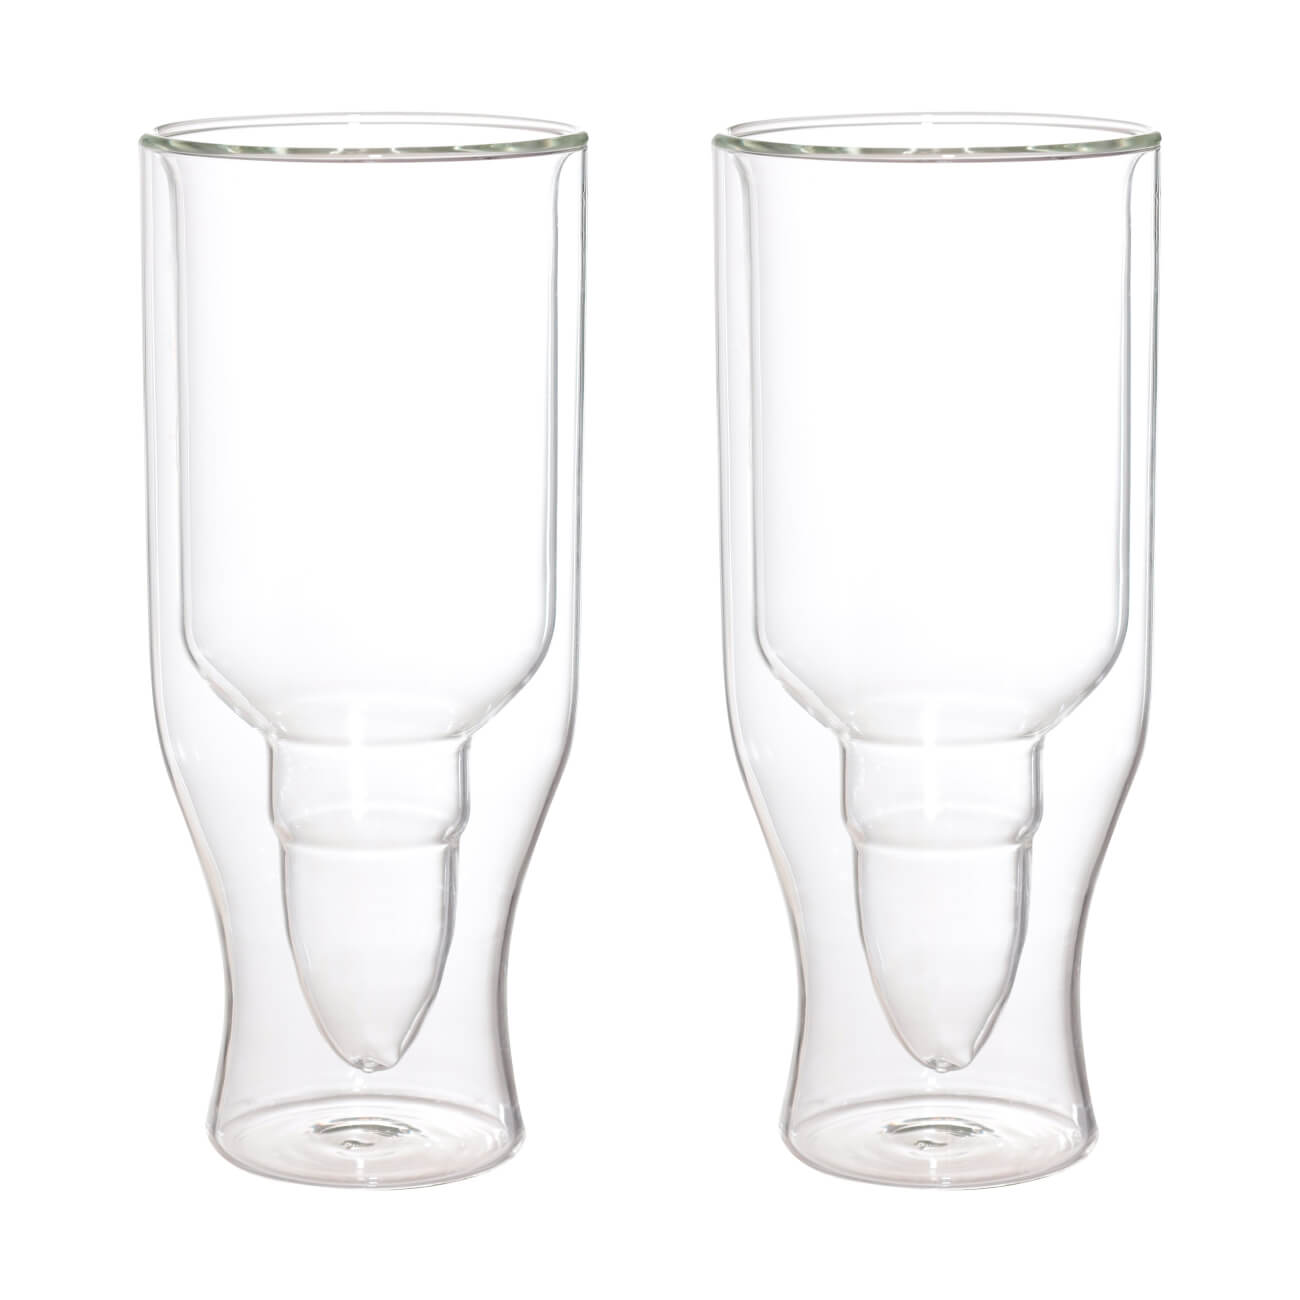 16490 fissman набор sencha из 2 х стаканов с двойными стенками 280мл жаропрочное стекло Стакан для пива, 470 мл, 2 шт, стекло Б, Пуля, Air shape